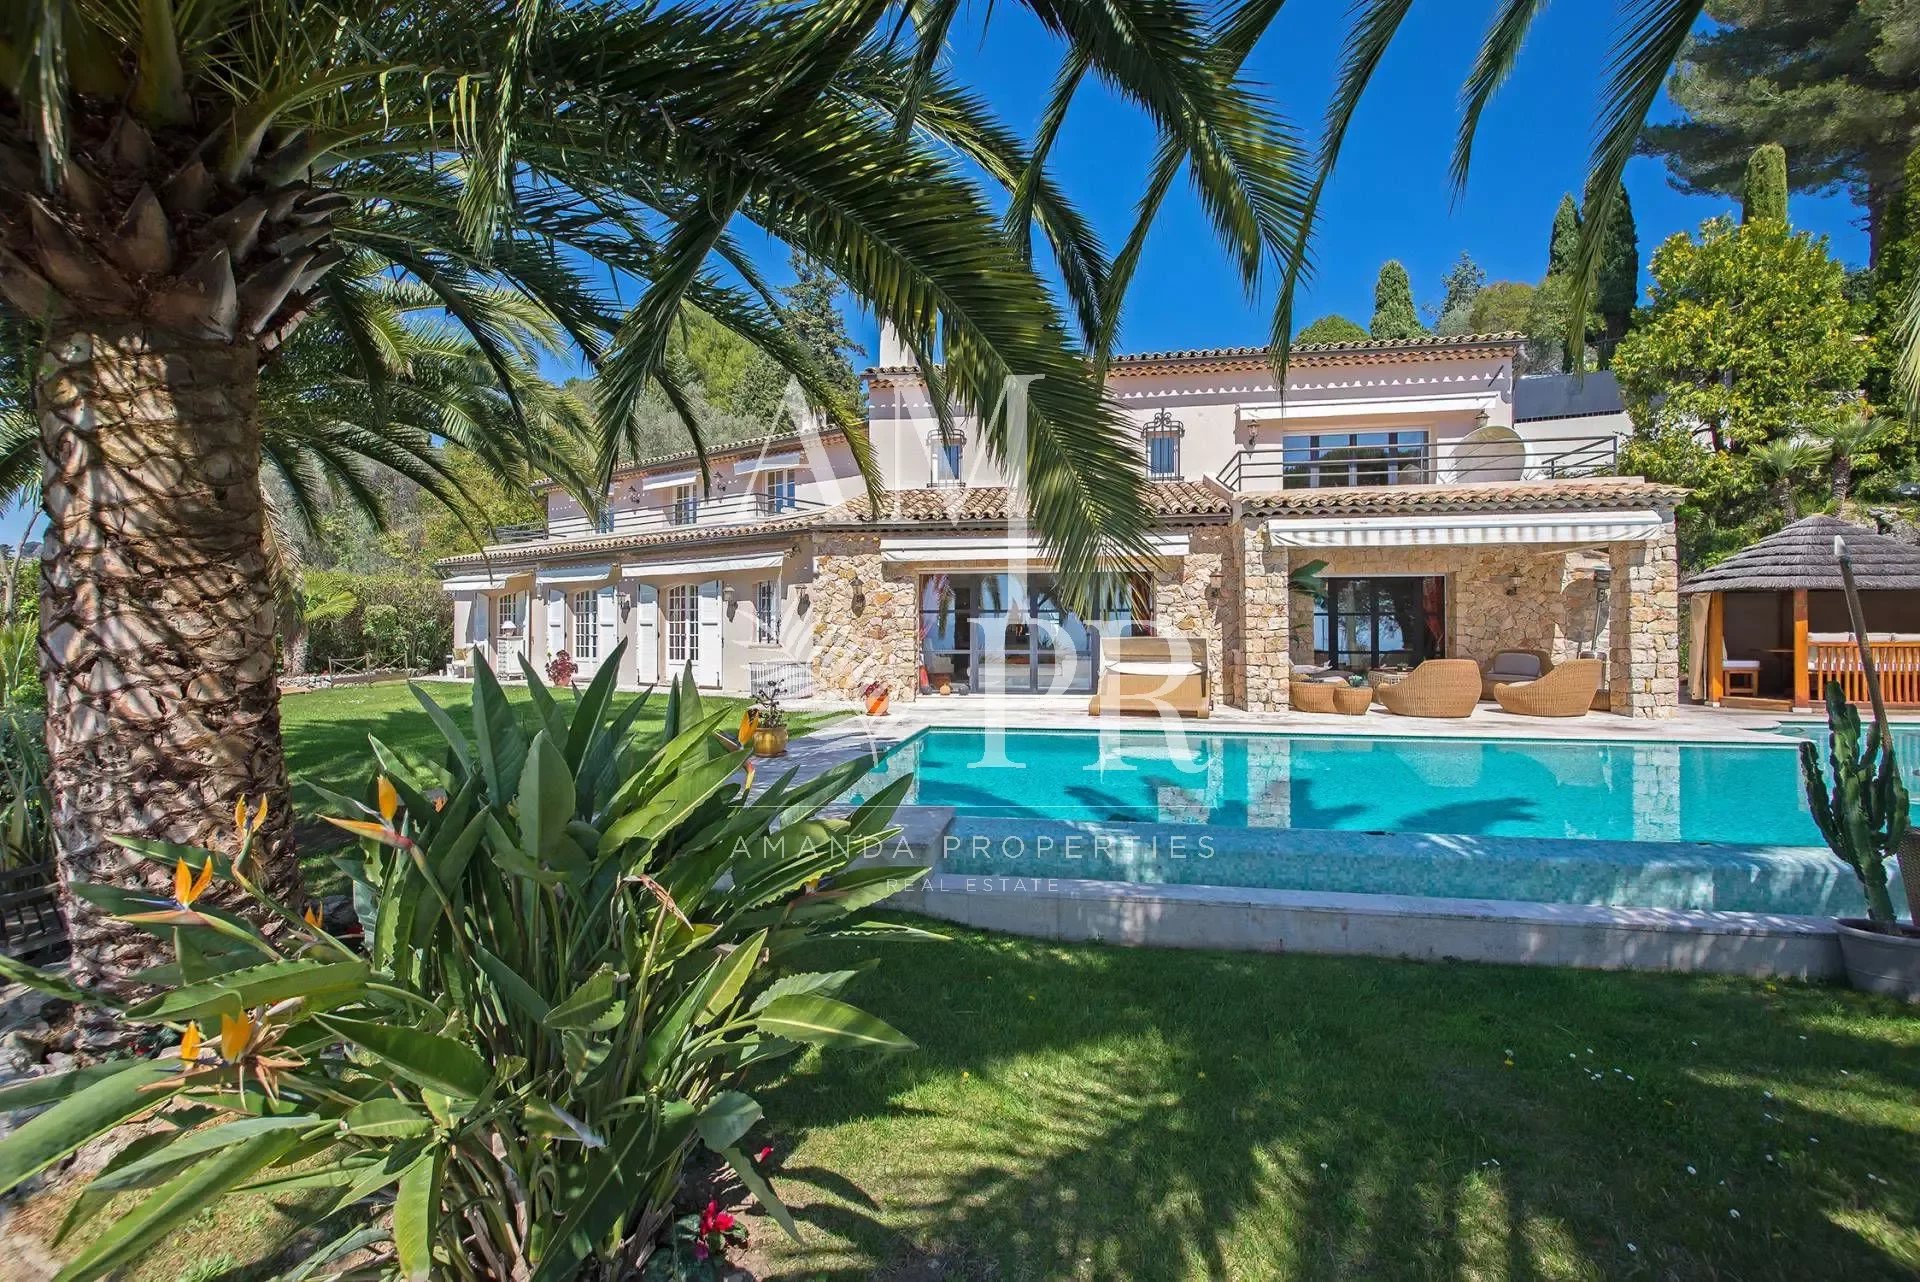 Superbe villa - Vue mer panoramique - Hauteurs de Cannes